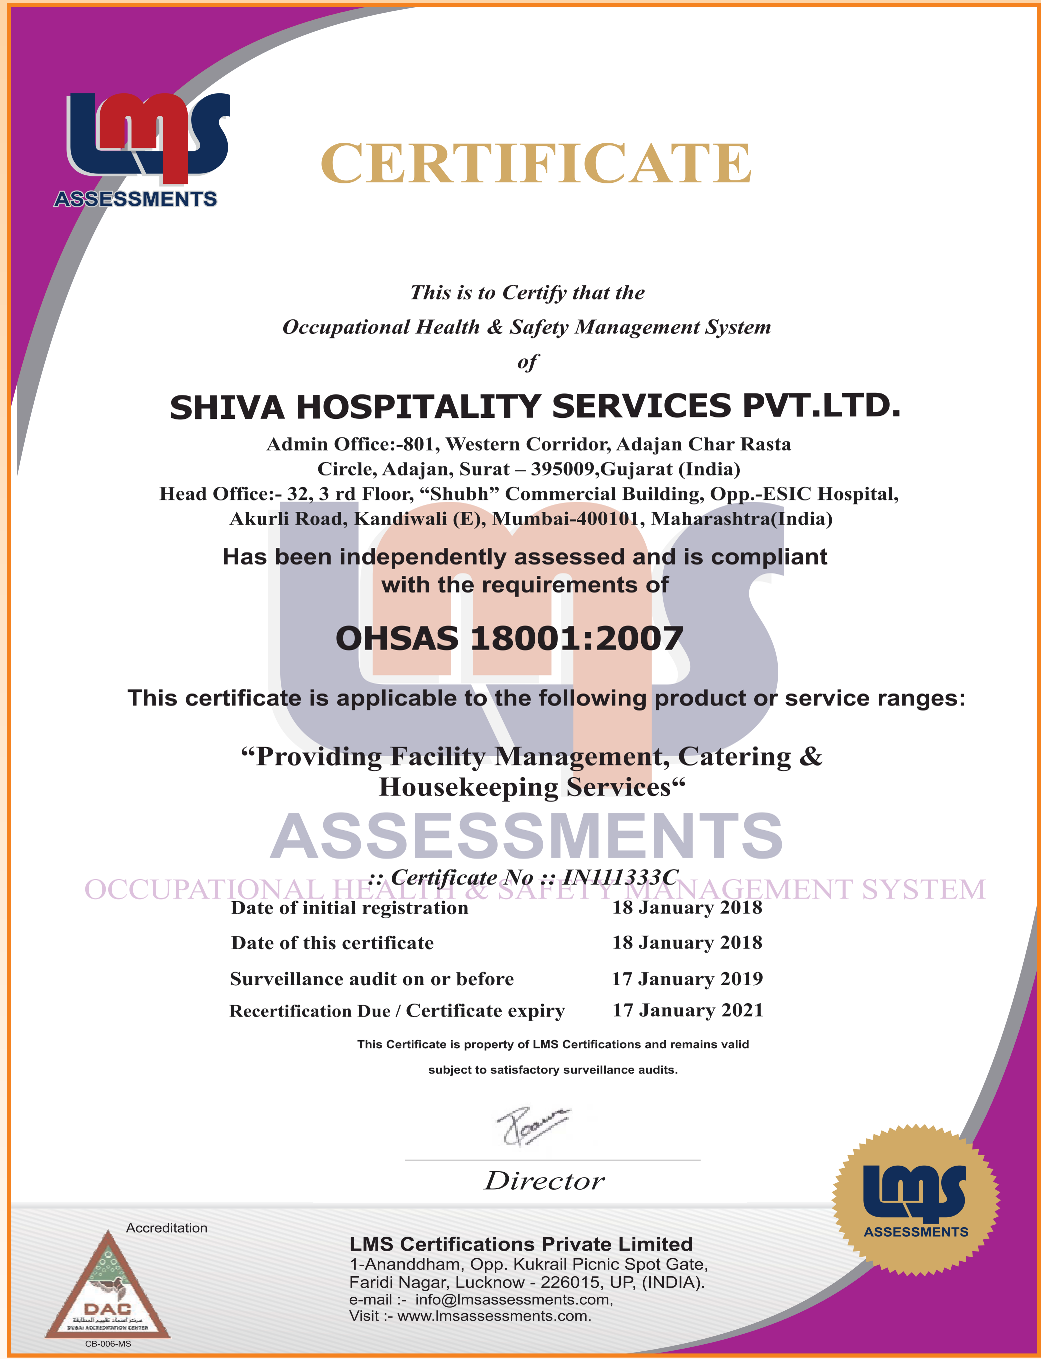  Shiva Hospitality Services - OHSAS 18001:2007